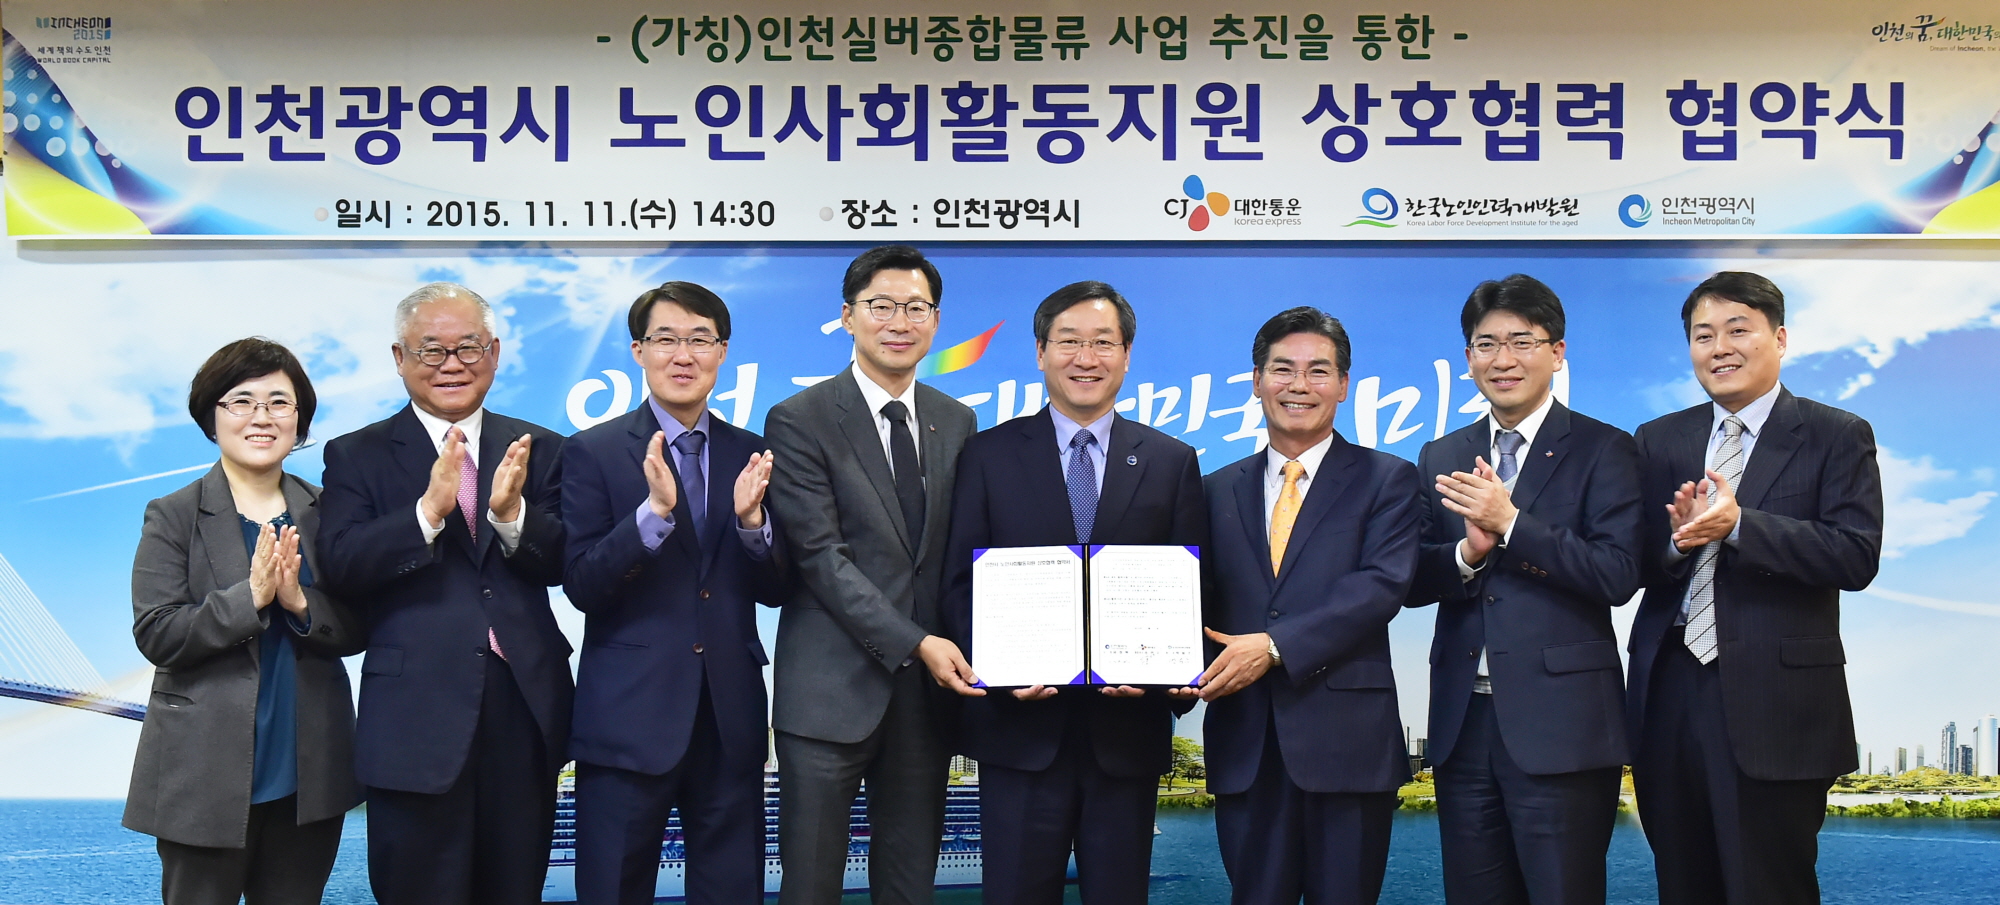 한국노인인력개발원-인천광역시-CJ대한통운 업무협약 체결